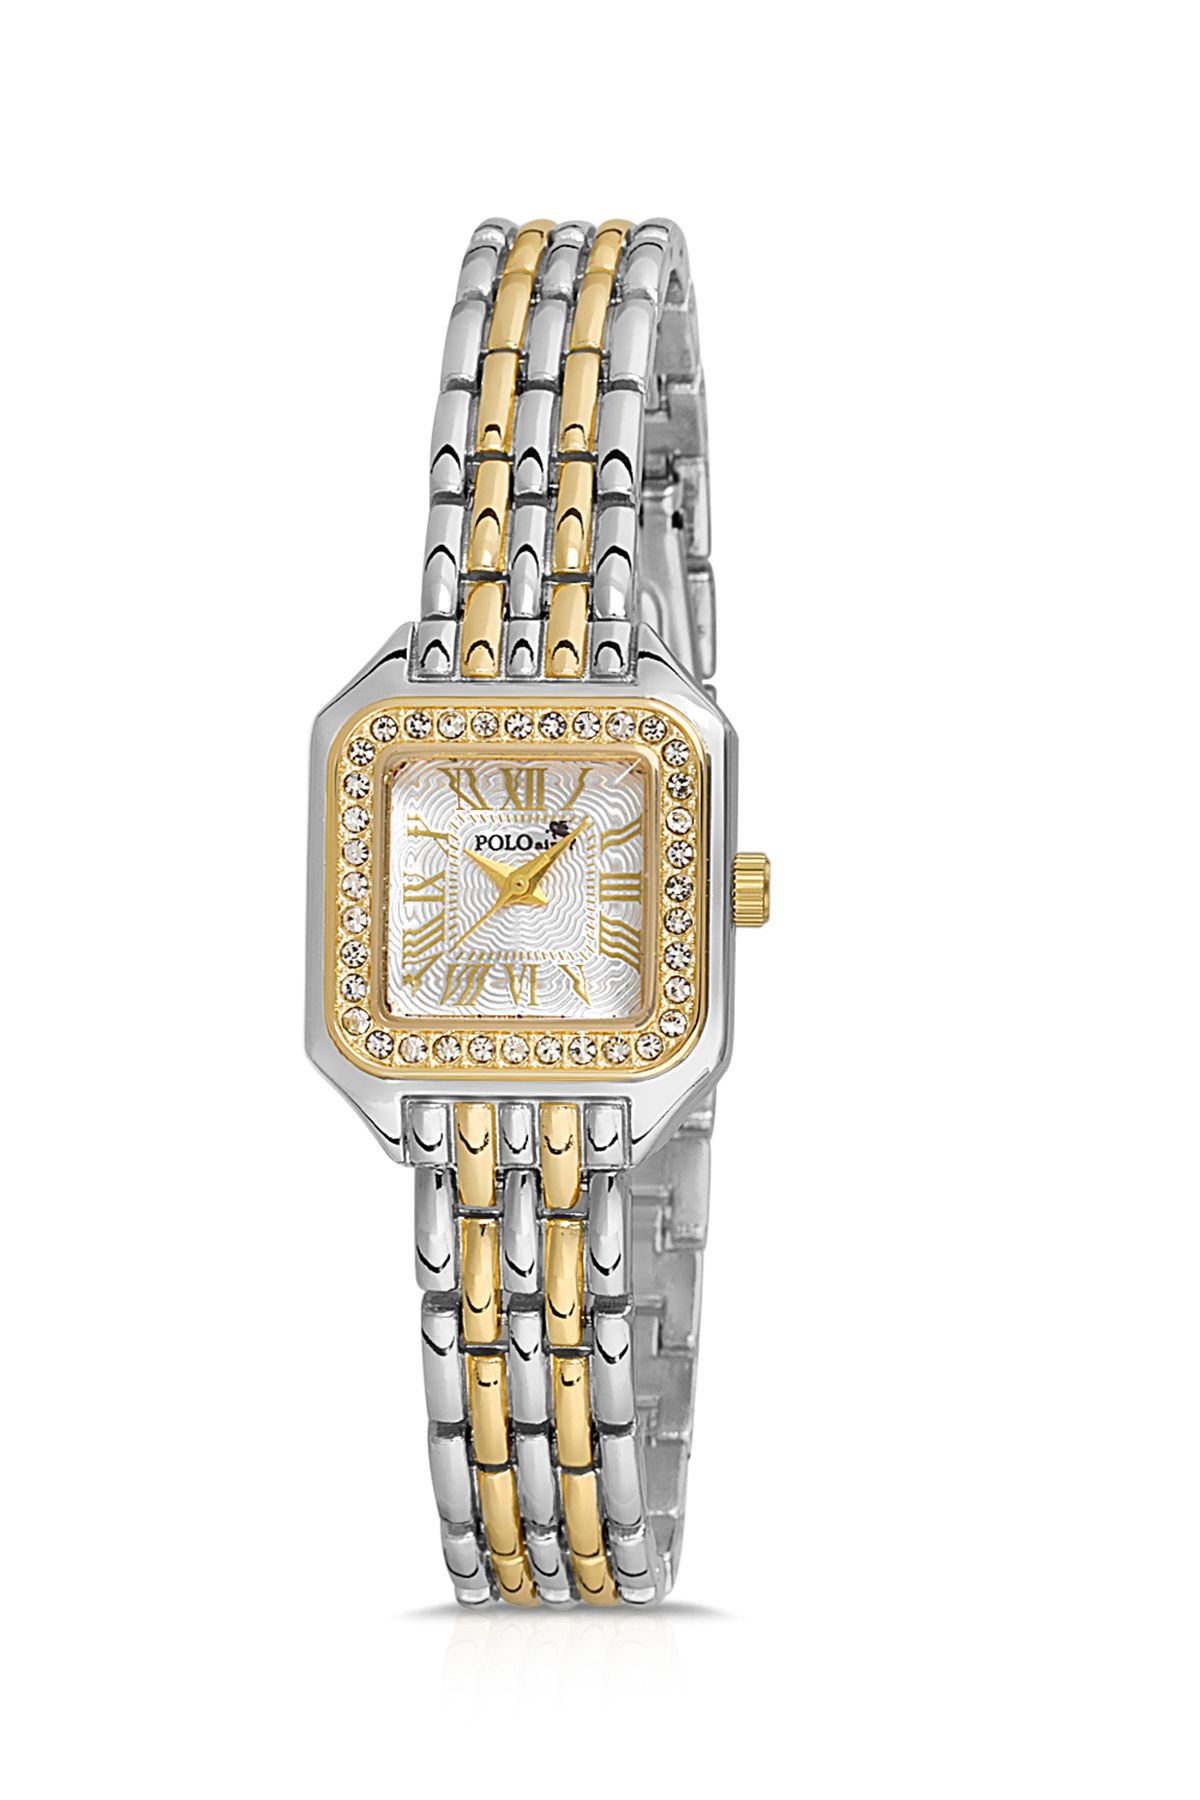 Romen Rakamlı Vintage Kadın Kol Saati Ve Zirkon Renkli Taşlı Bileklik Hediye Karışık Pl-1475B3 Gümüşe Gold Pl-1475B3